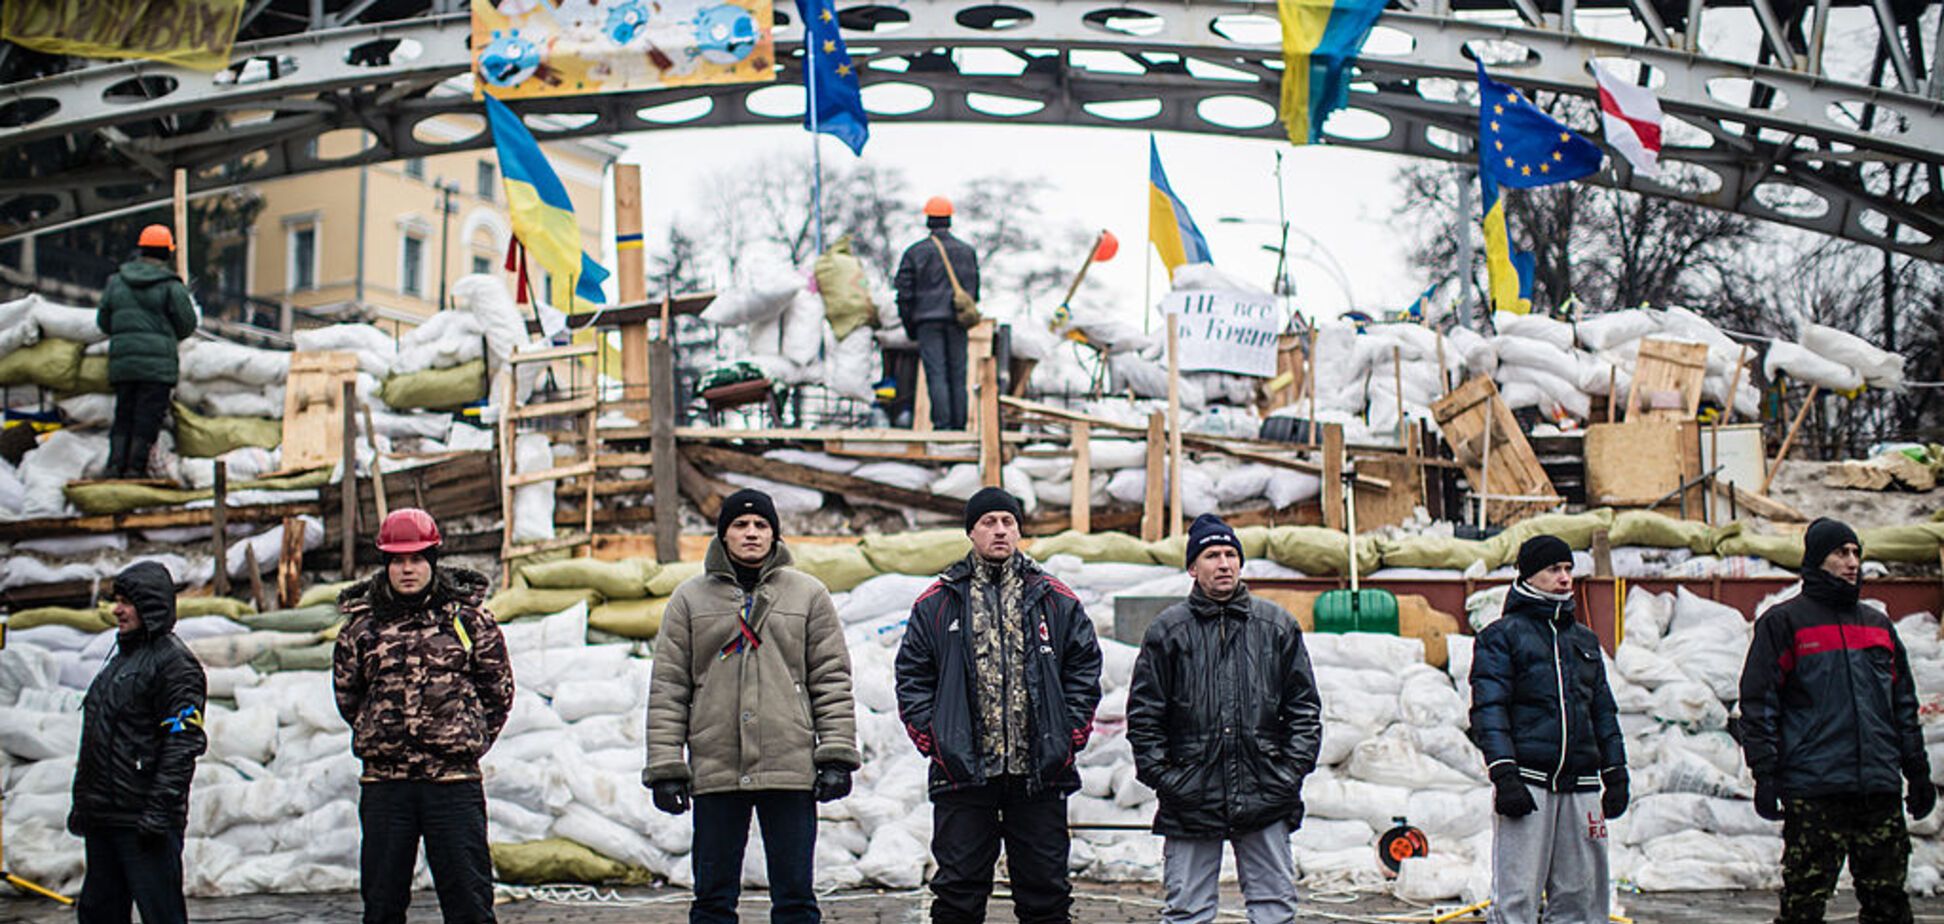 'Не будет блатных': на чем ездят лидеры Майдана